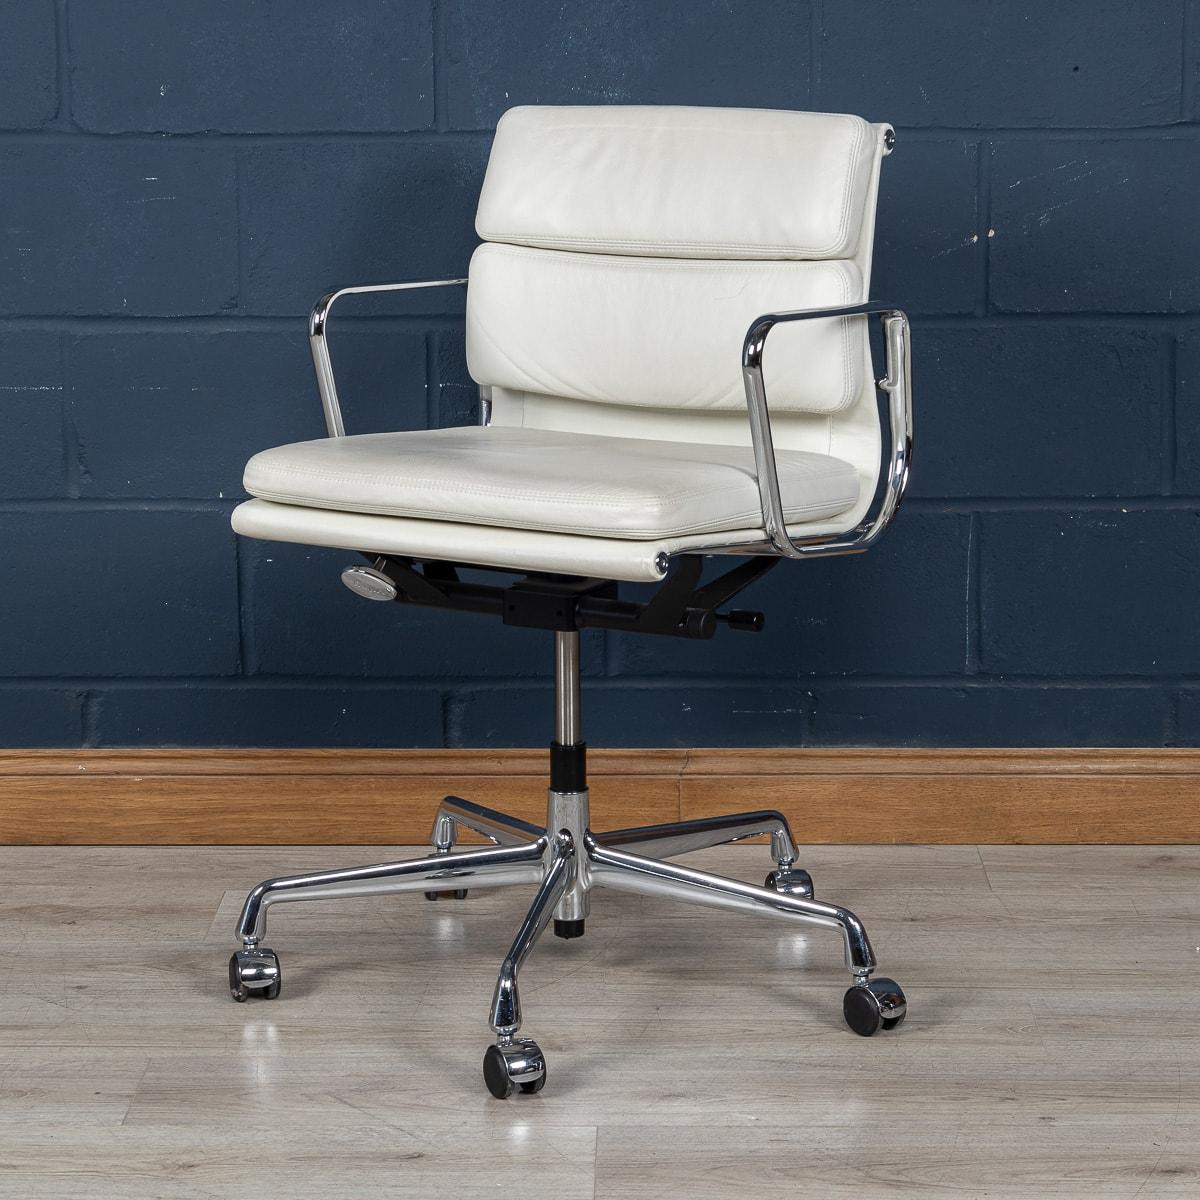 Ein atemberaubender Satz von vier Eames Chairs von Vitra, die erst kürzlich hergestellt wurden und mit einem herrlichen weißen 